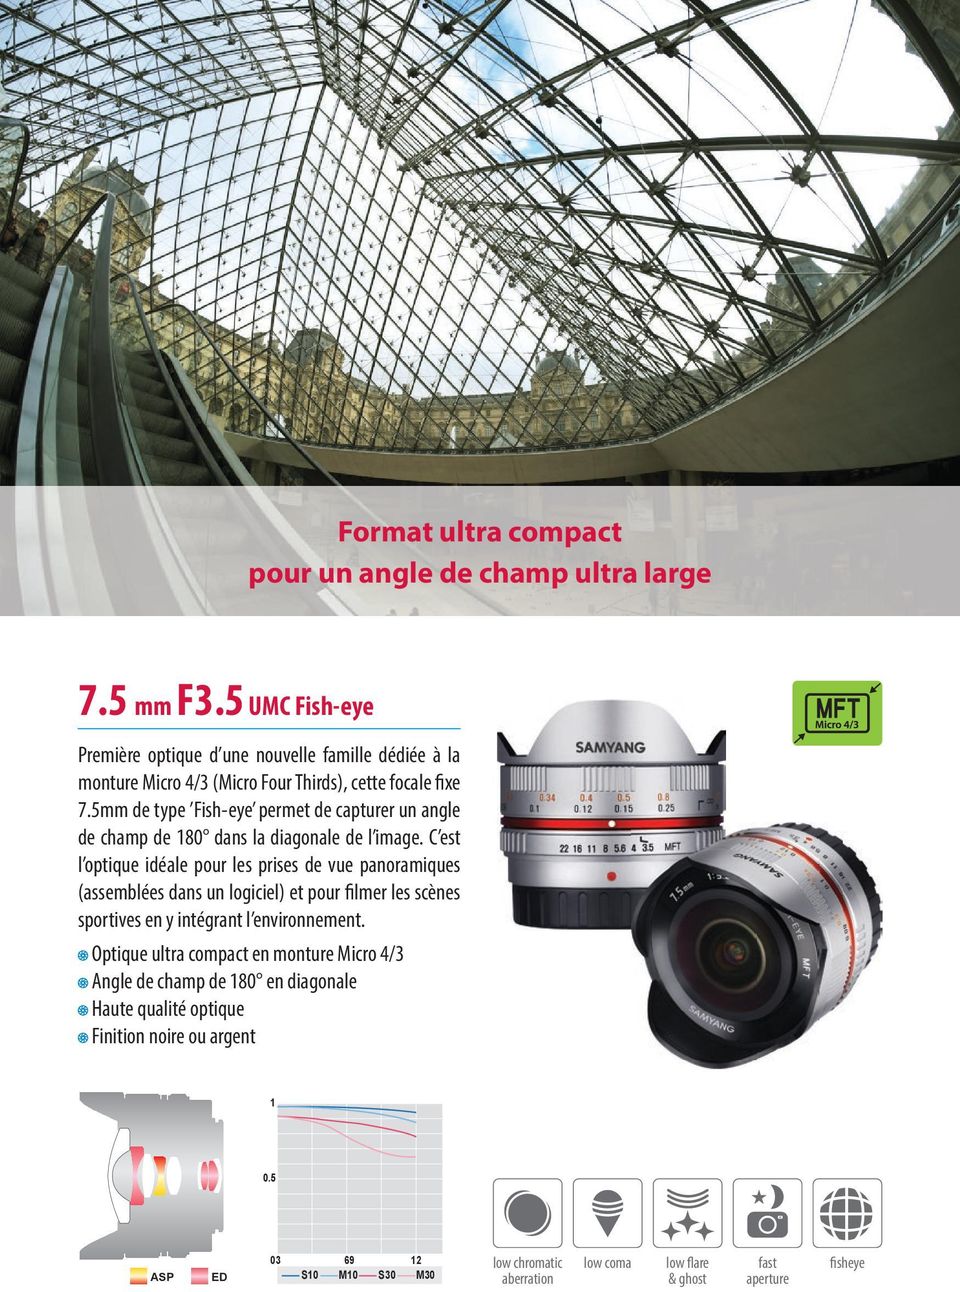 5mm de type Fish-eye permet de capturer un angle de champ de 80 dans la diagonale de l image.